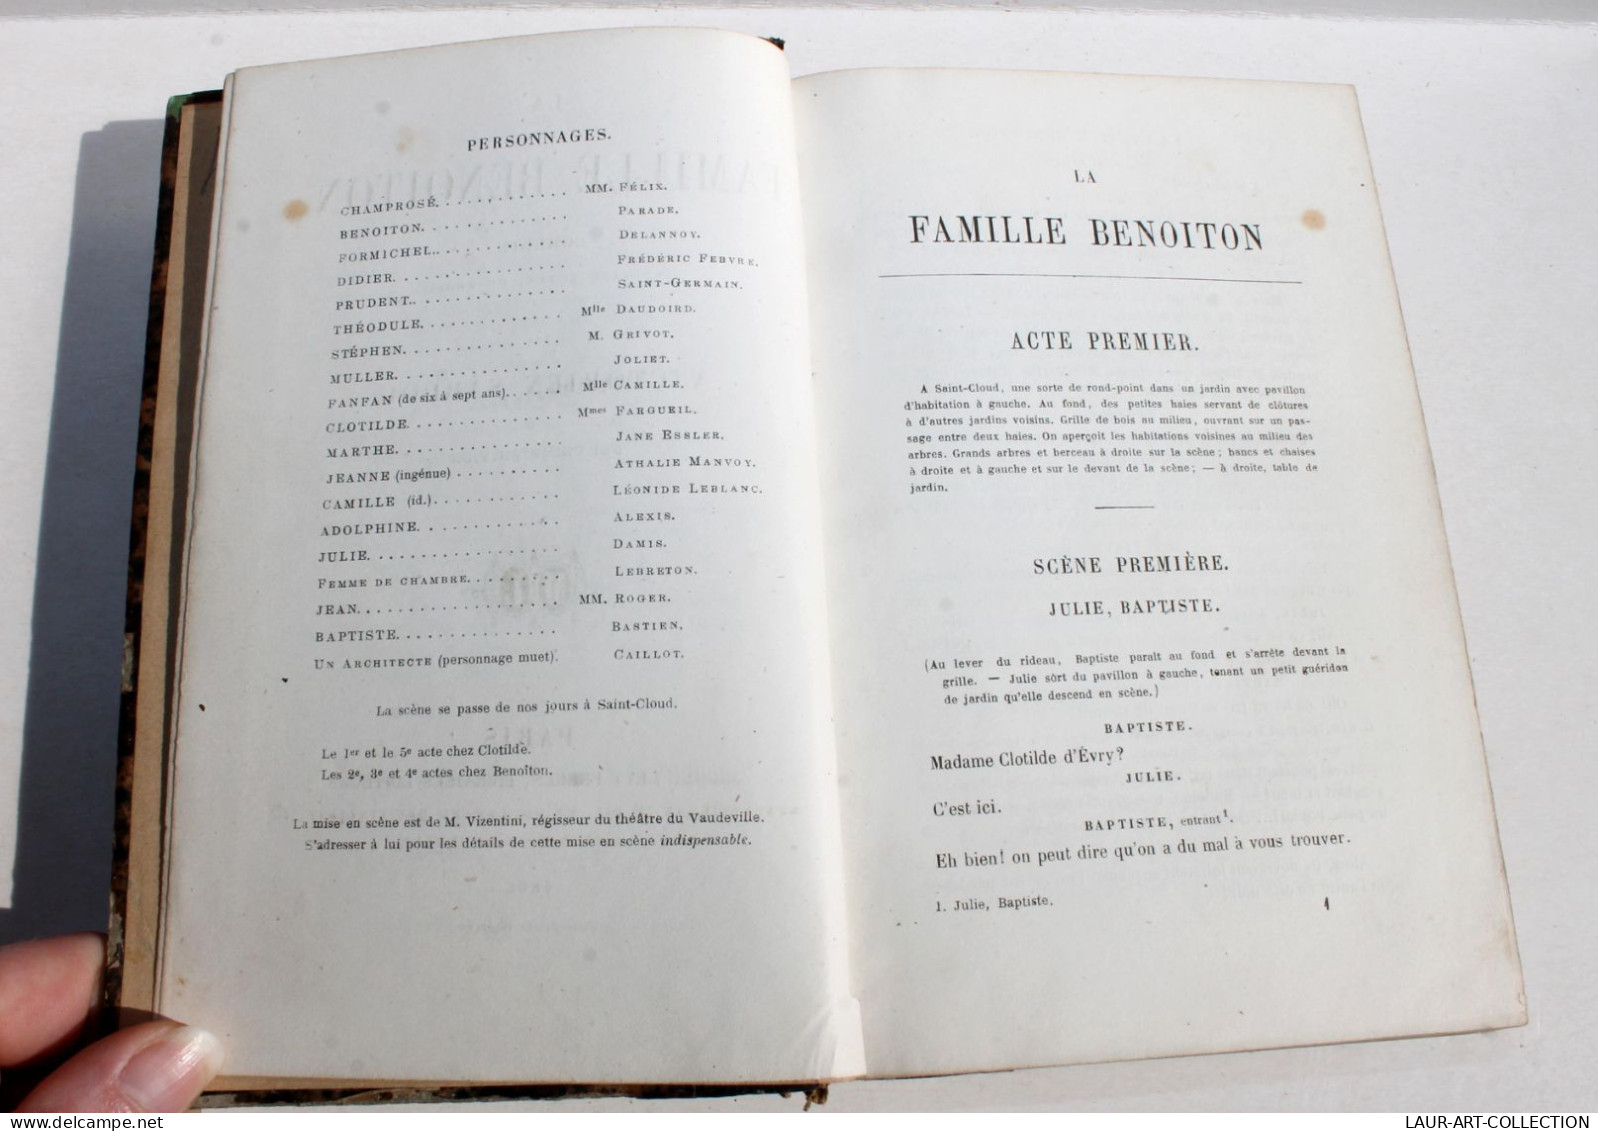 LA FAMILLE BENOITON COMEDIE En 5 ACTES De VICTORIEN SARDOU, 2e EDITION 1866 LEVY / ANCIEN LIVRE FRANCAIS (1803.7) - French Authors